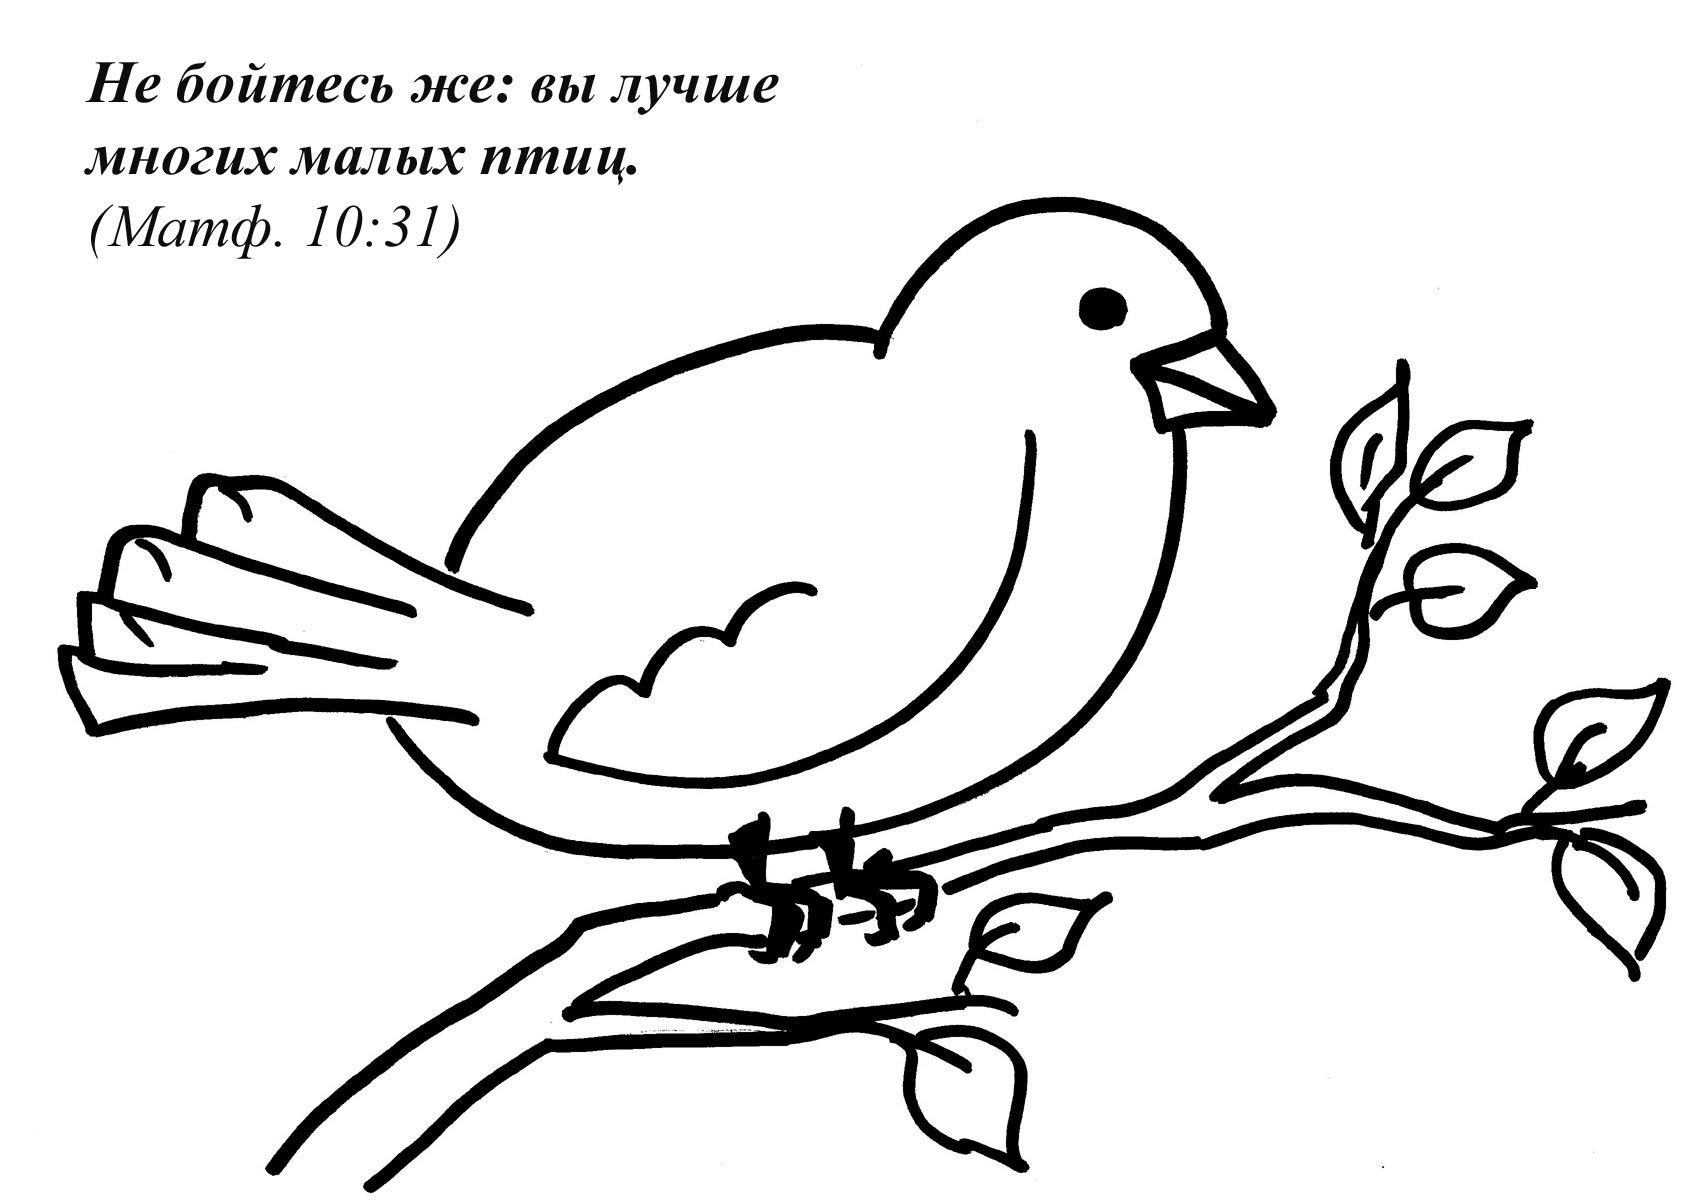 Дети и птичка иллюстрация к стихотворению Плещеева